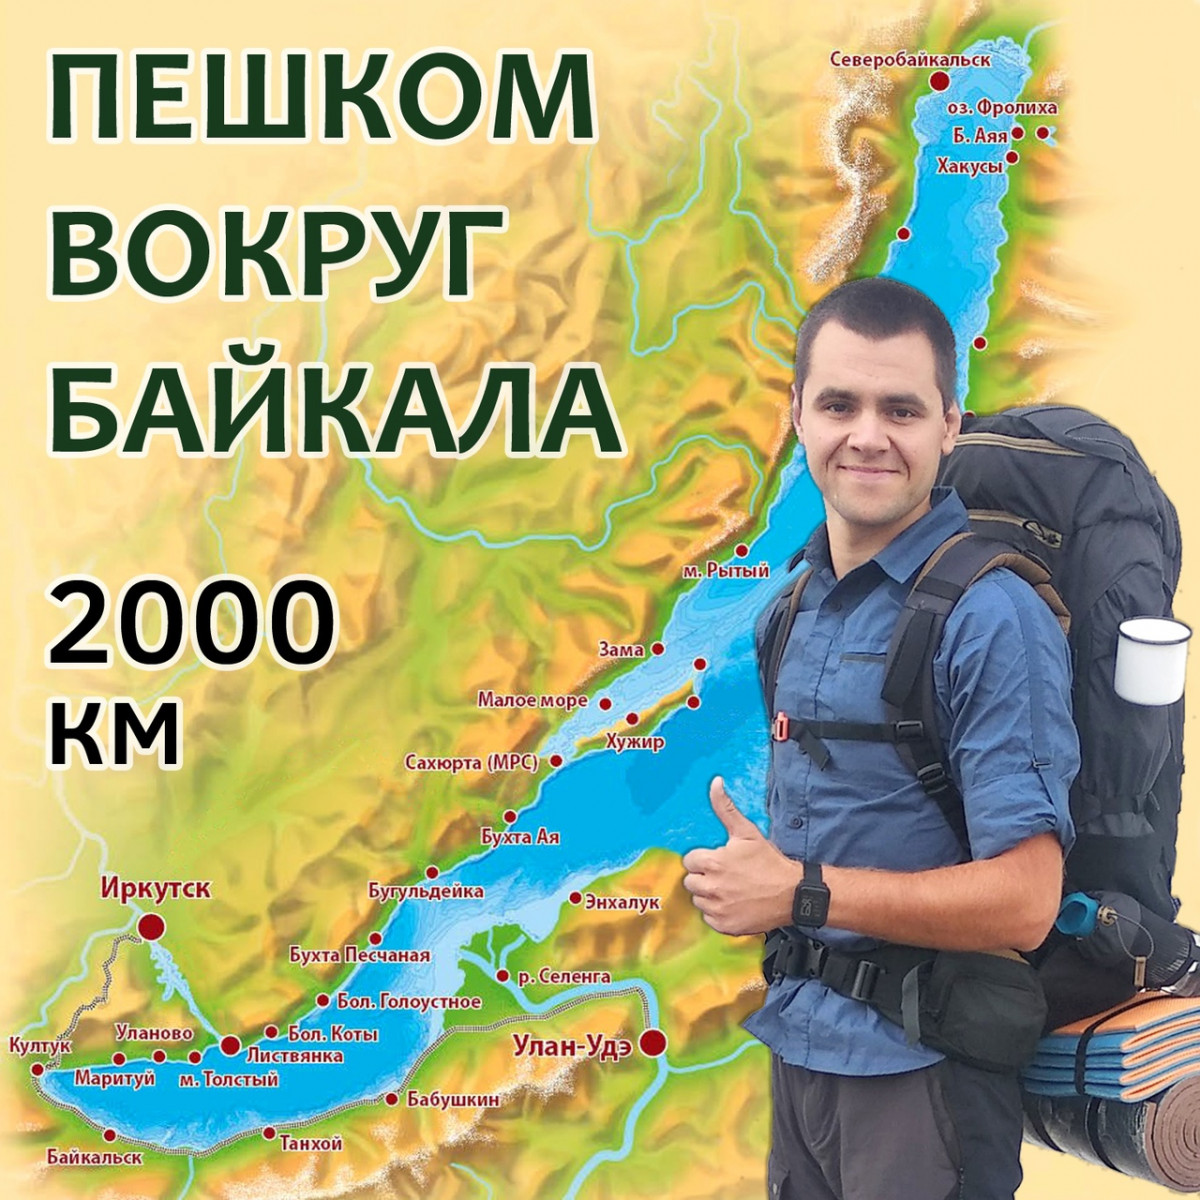 Нижегородец Влад Повеликин отправился в путешествие вокруг Байкала